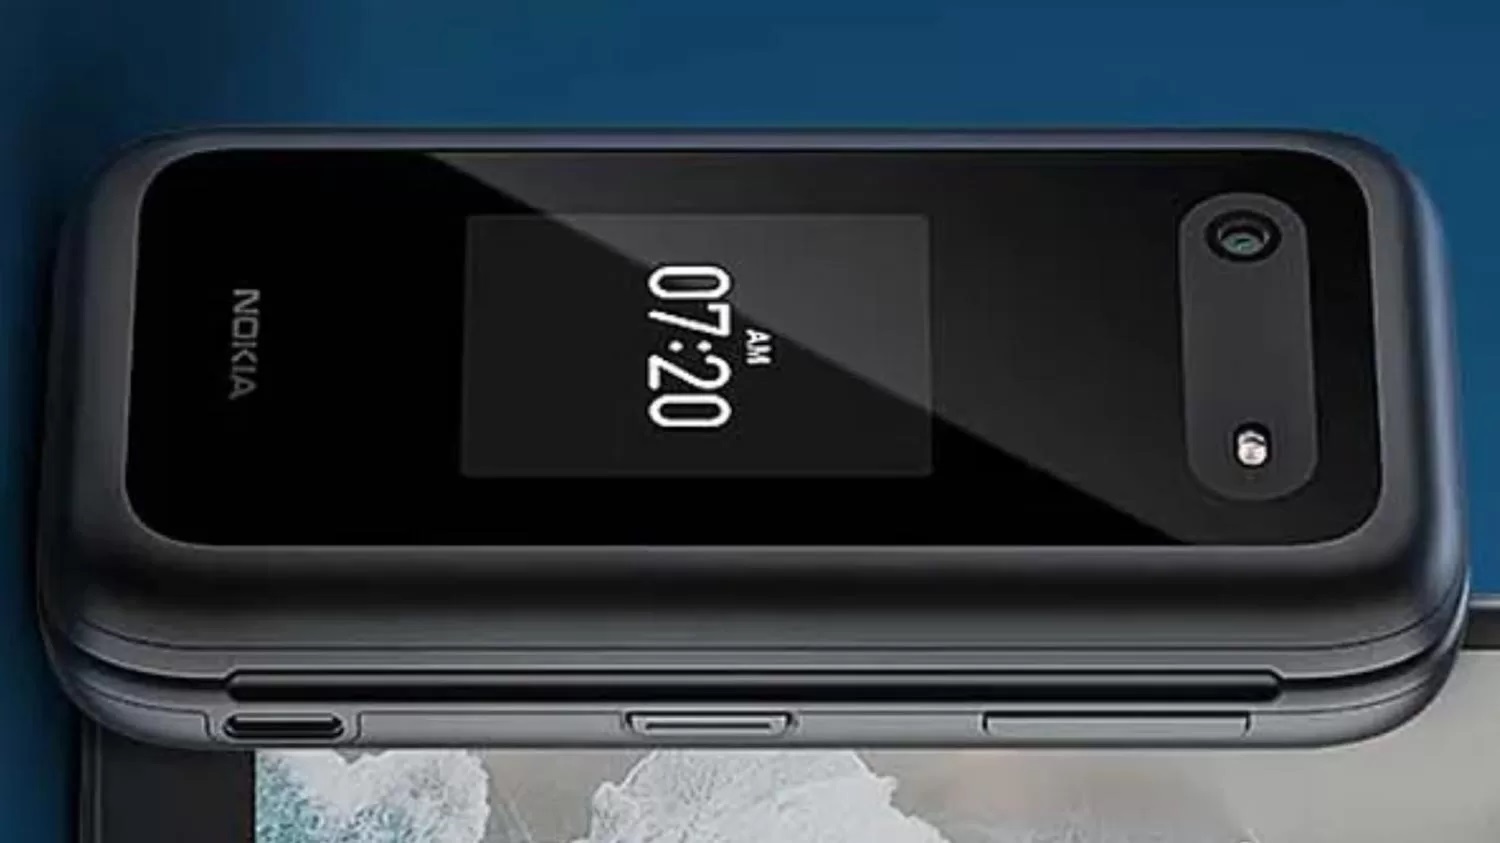 Nokia 2760 Flip 4G: reencarnación del "clamshell" de 2007 con soporte 4G y KaiOS por solo $ 79